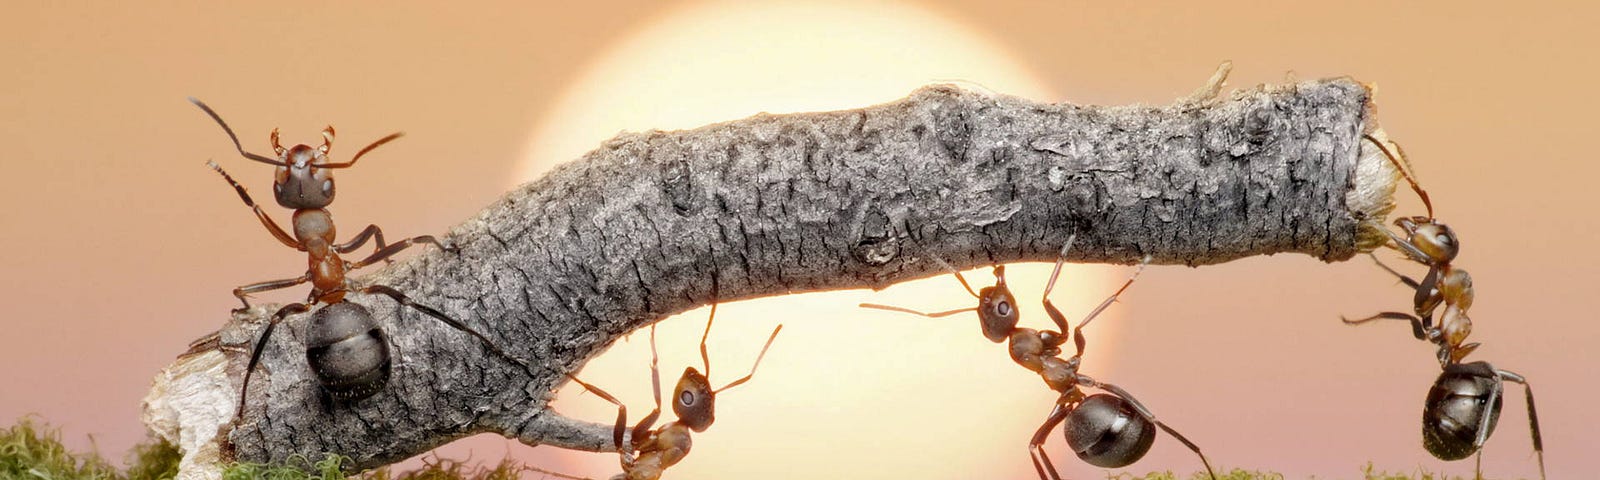 Afbeelding van duurzaam samenwerkende mieren die vertoond werd tijdens de viering van de 80e verjaardag van Prinses Irene.